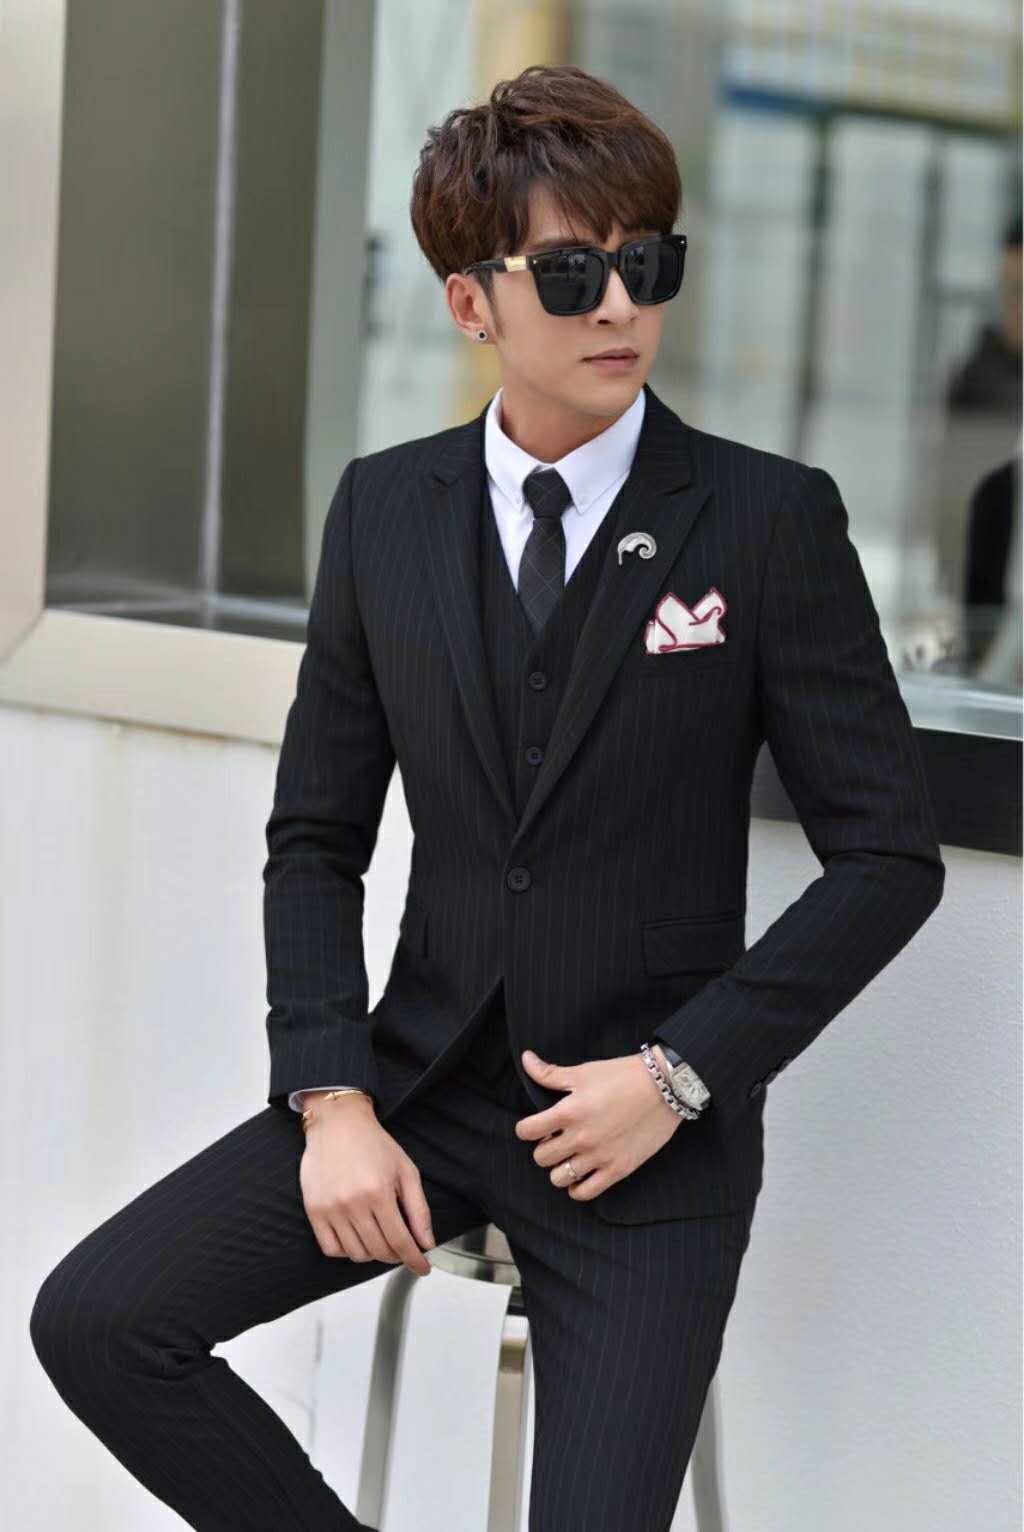 男士西服上海19年新款星戈服饰时尚运动优质微商代理男装一件代发